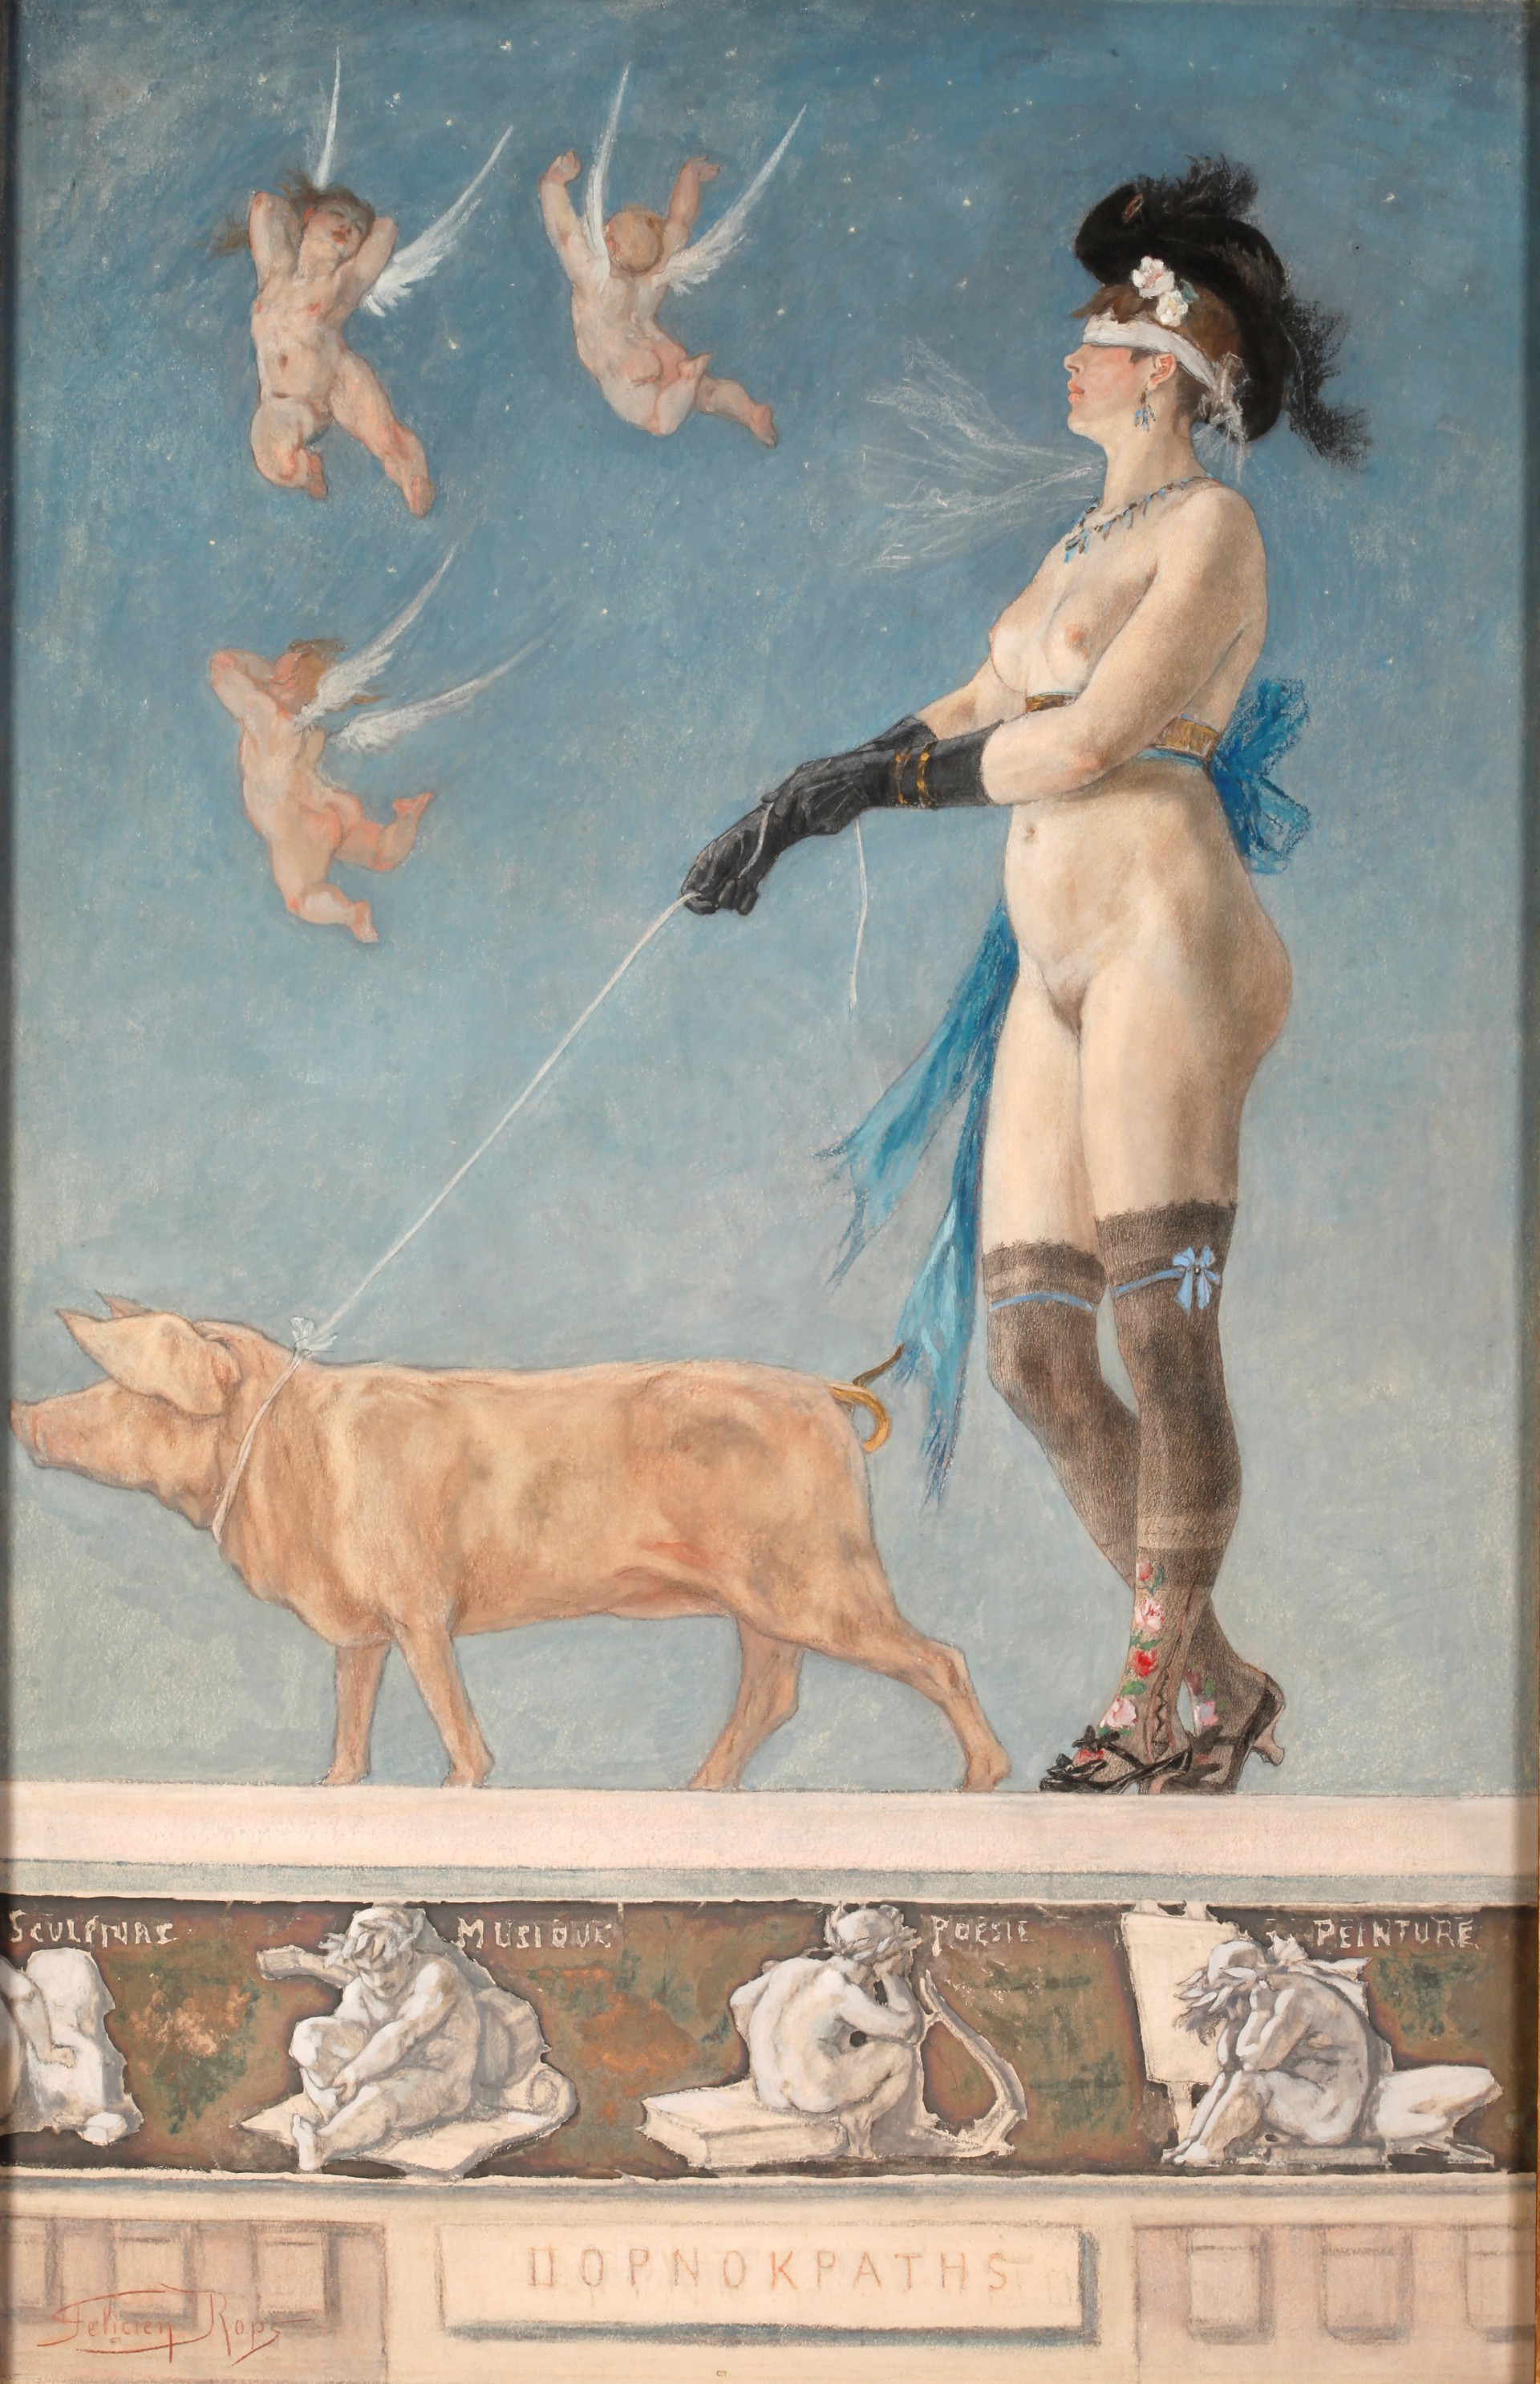 Giuseppe de Sanctis, Naked woman